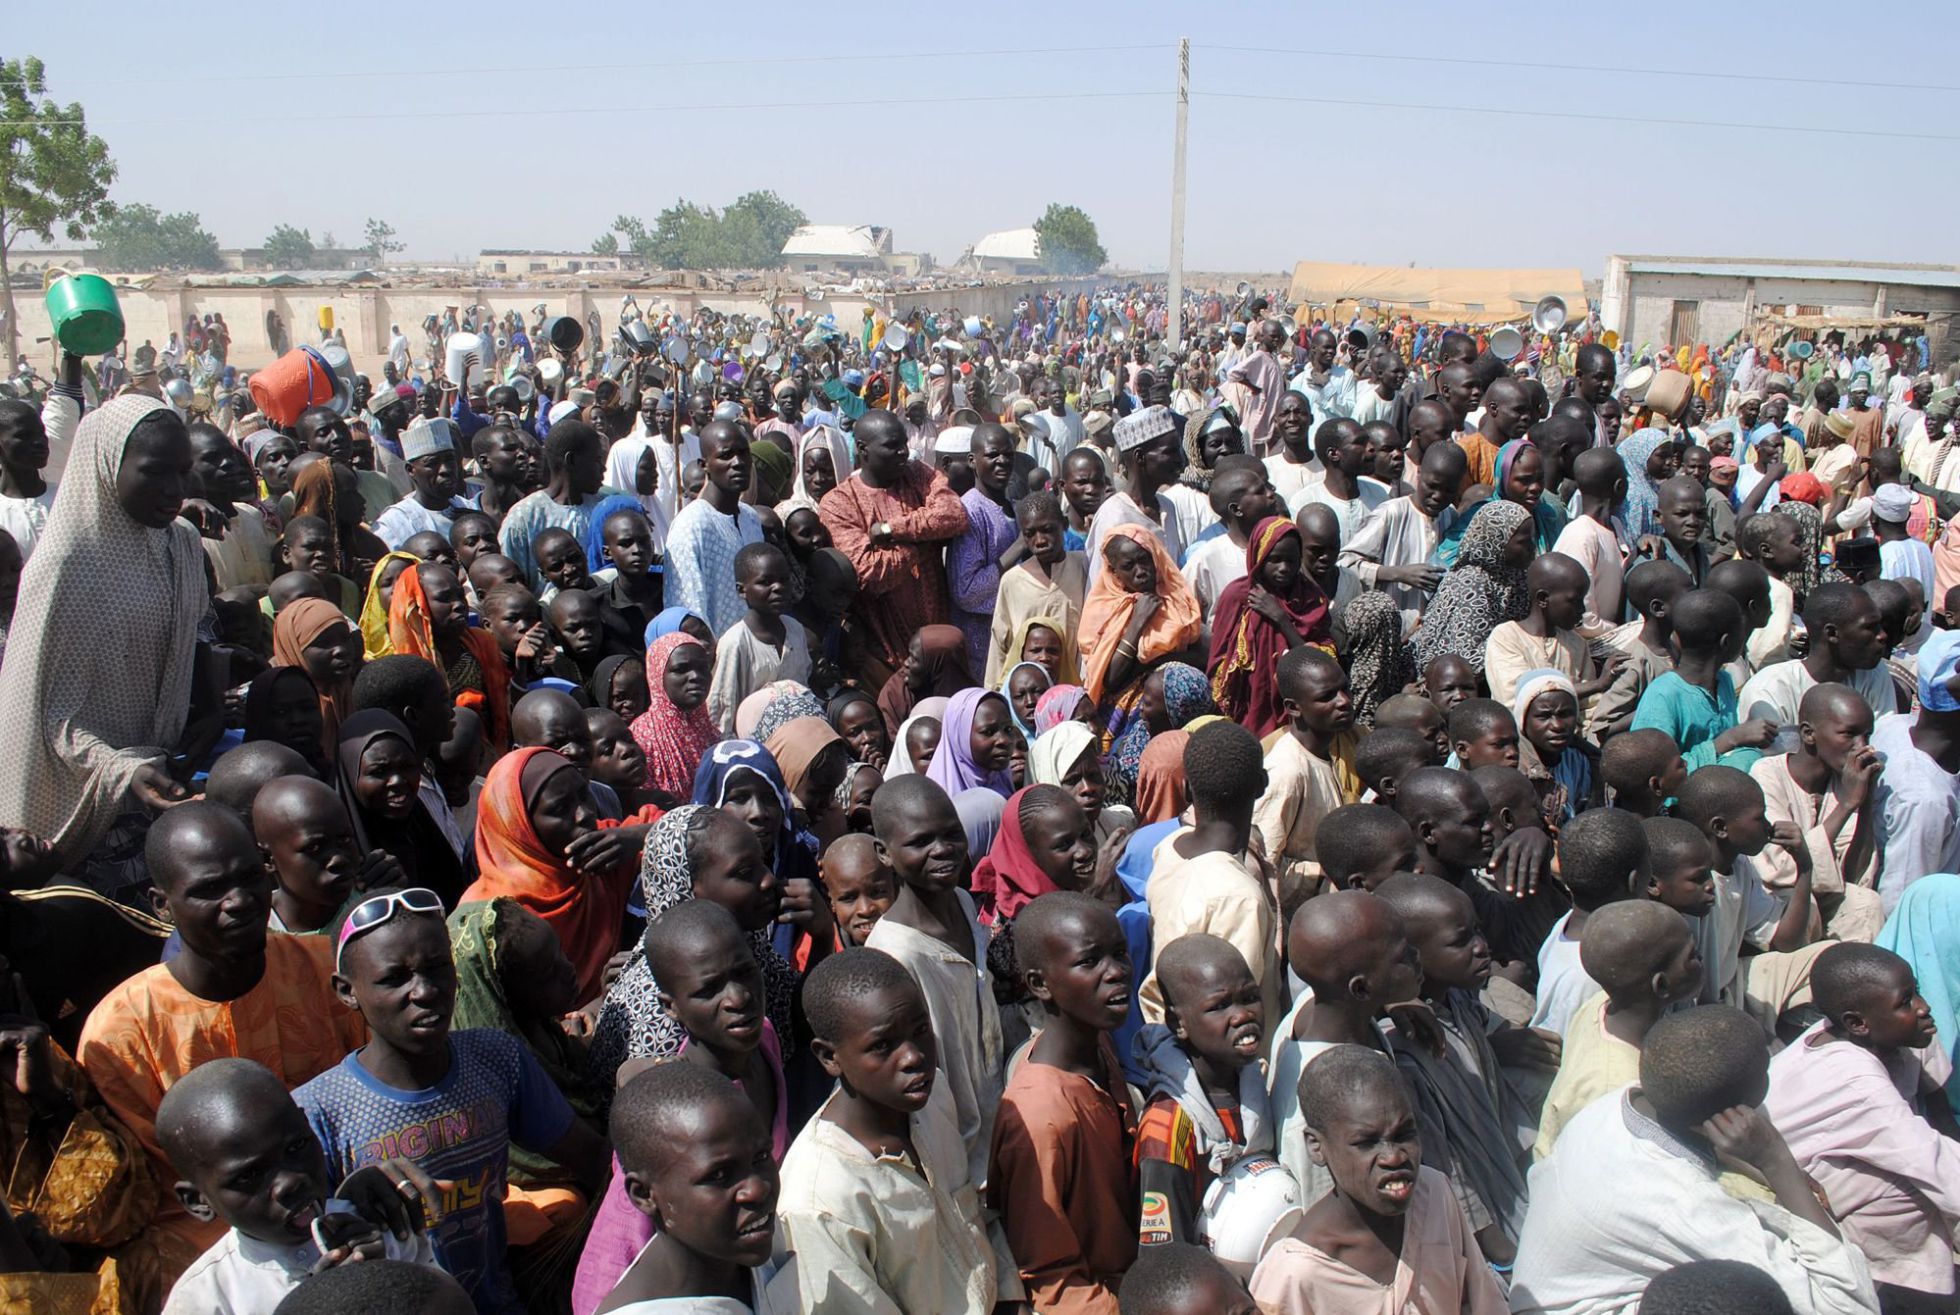 Nigeria: En los orígenes de la secta Boko Haram. - Página 6 1455131695_167839_1455133011_noticia_normal_recorte1